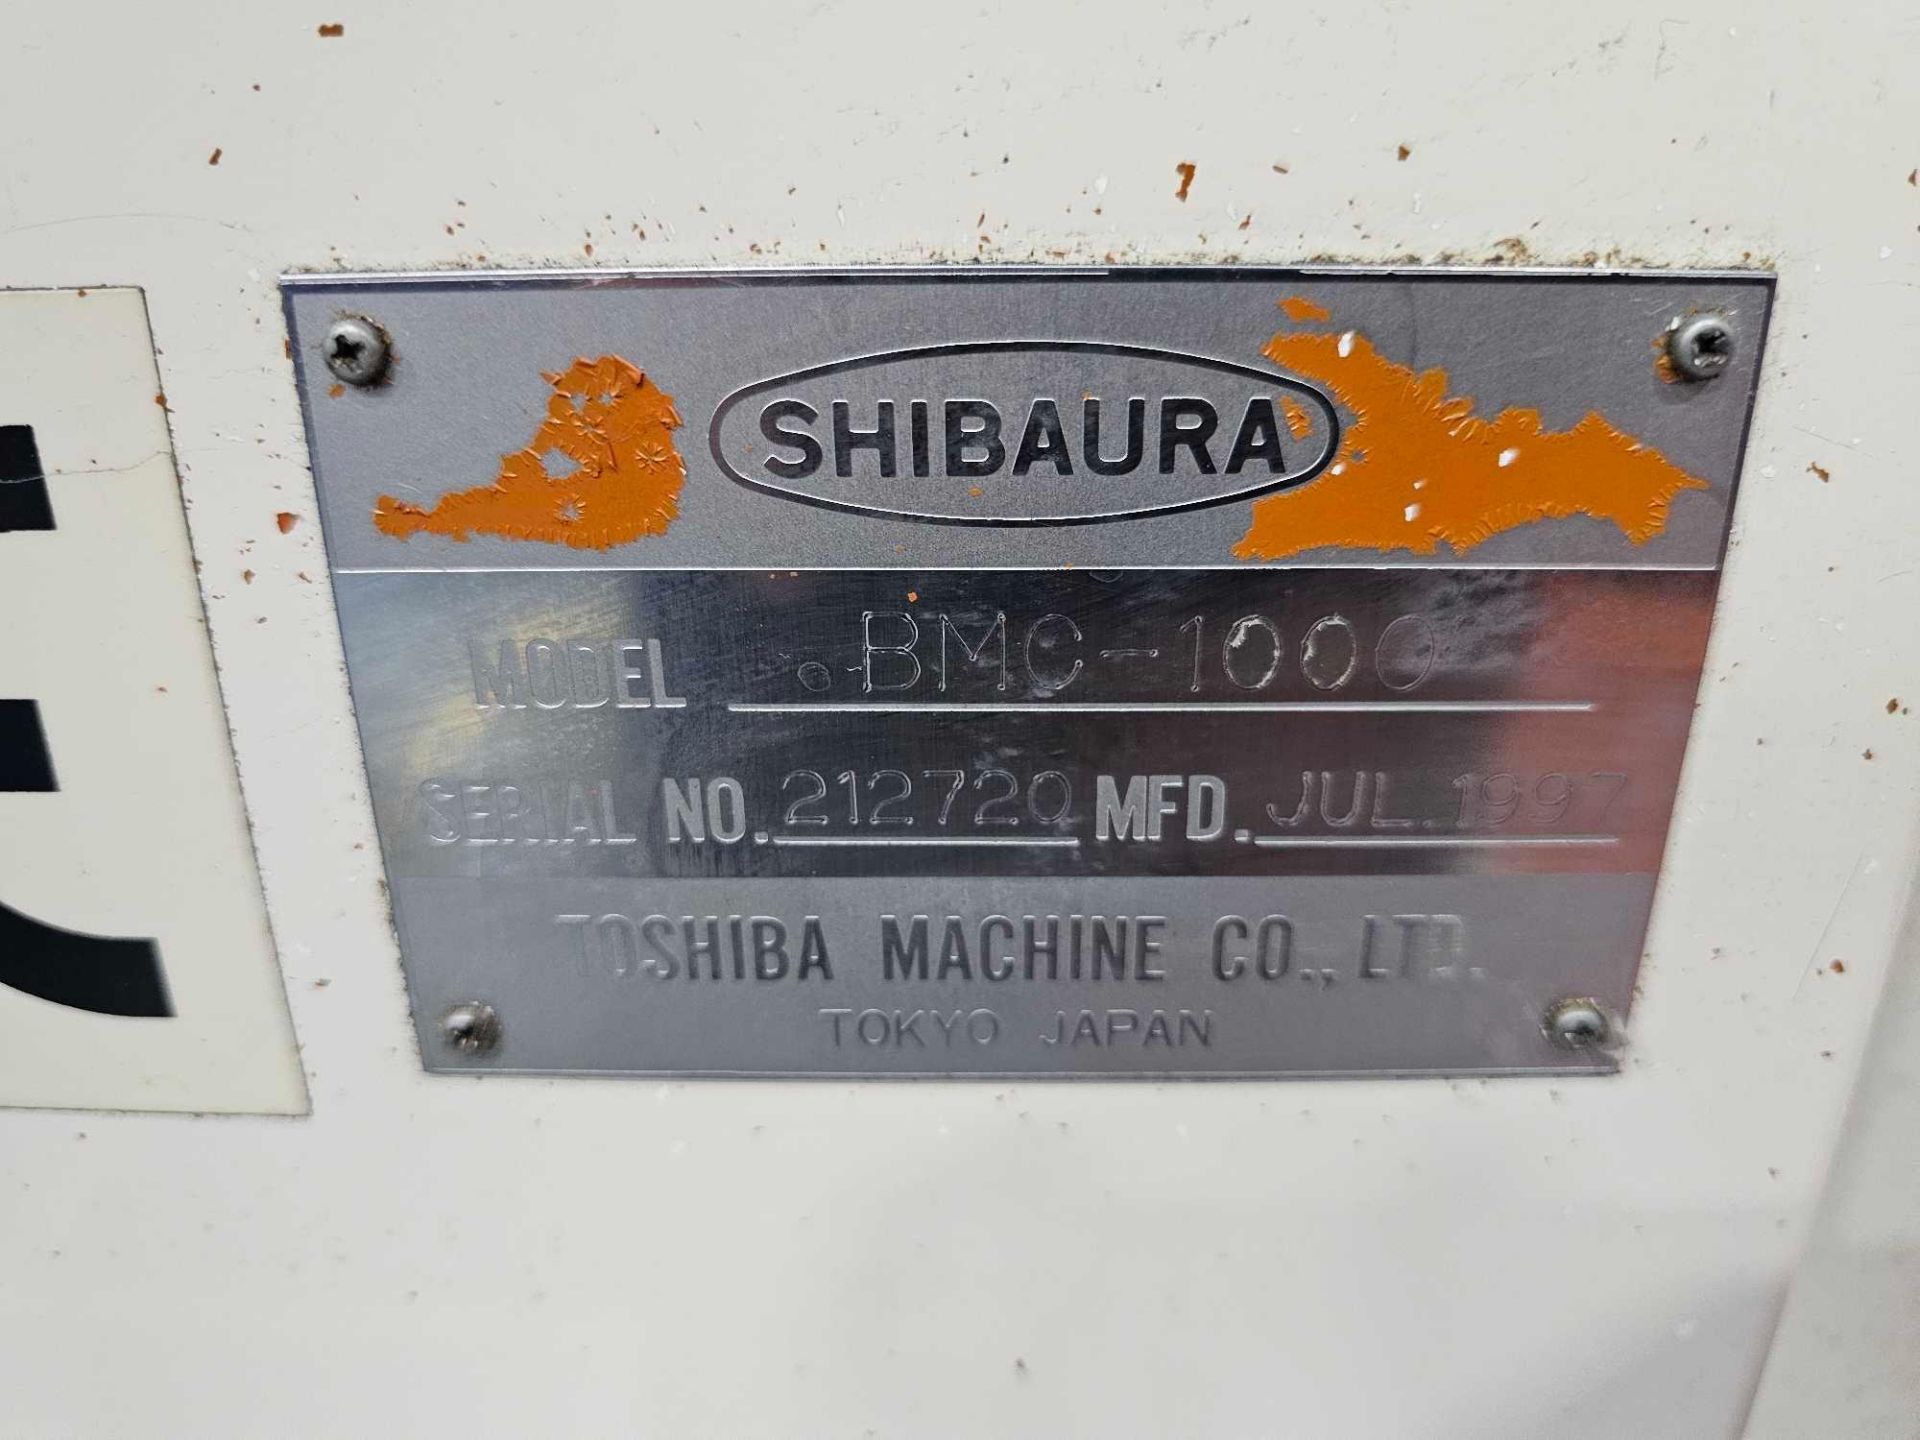 1997 TOSHIBA BMC-1000 1000MM HORIZONTAL MACHINING CENTER - Image 13 of 36